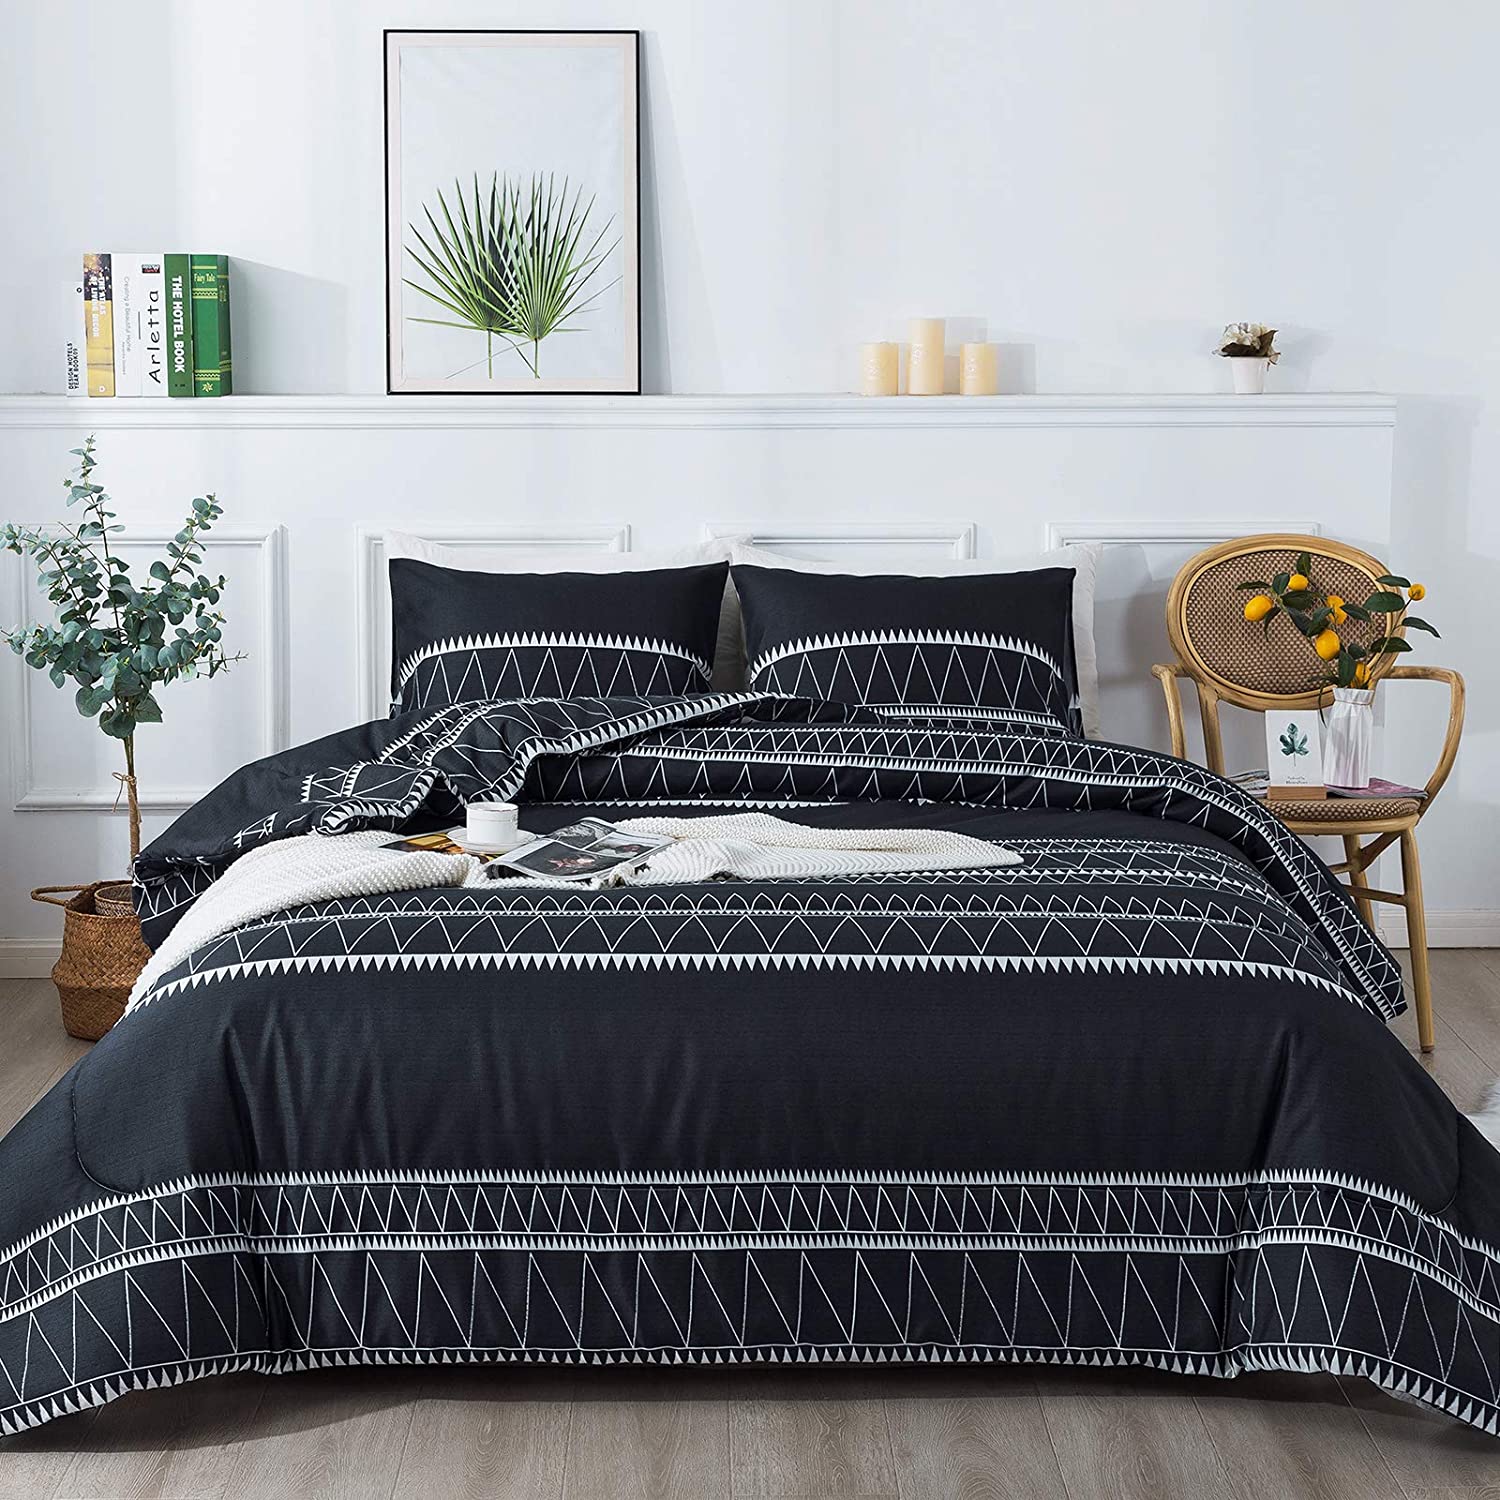 Черное одеяло в стиле бохо, 3 предмета (1 одеяло в треугольную геометрическую полоску + 2 наволочки), мягкая микрофибра, серый богемный пух, альтернативный комплект одеяла, вставка для пододеяльника